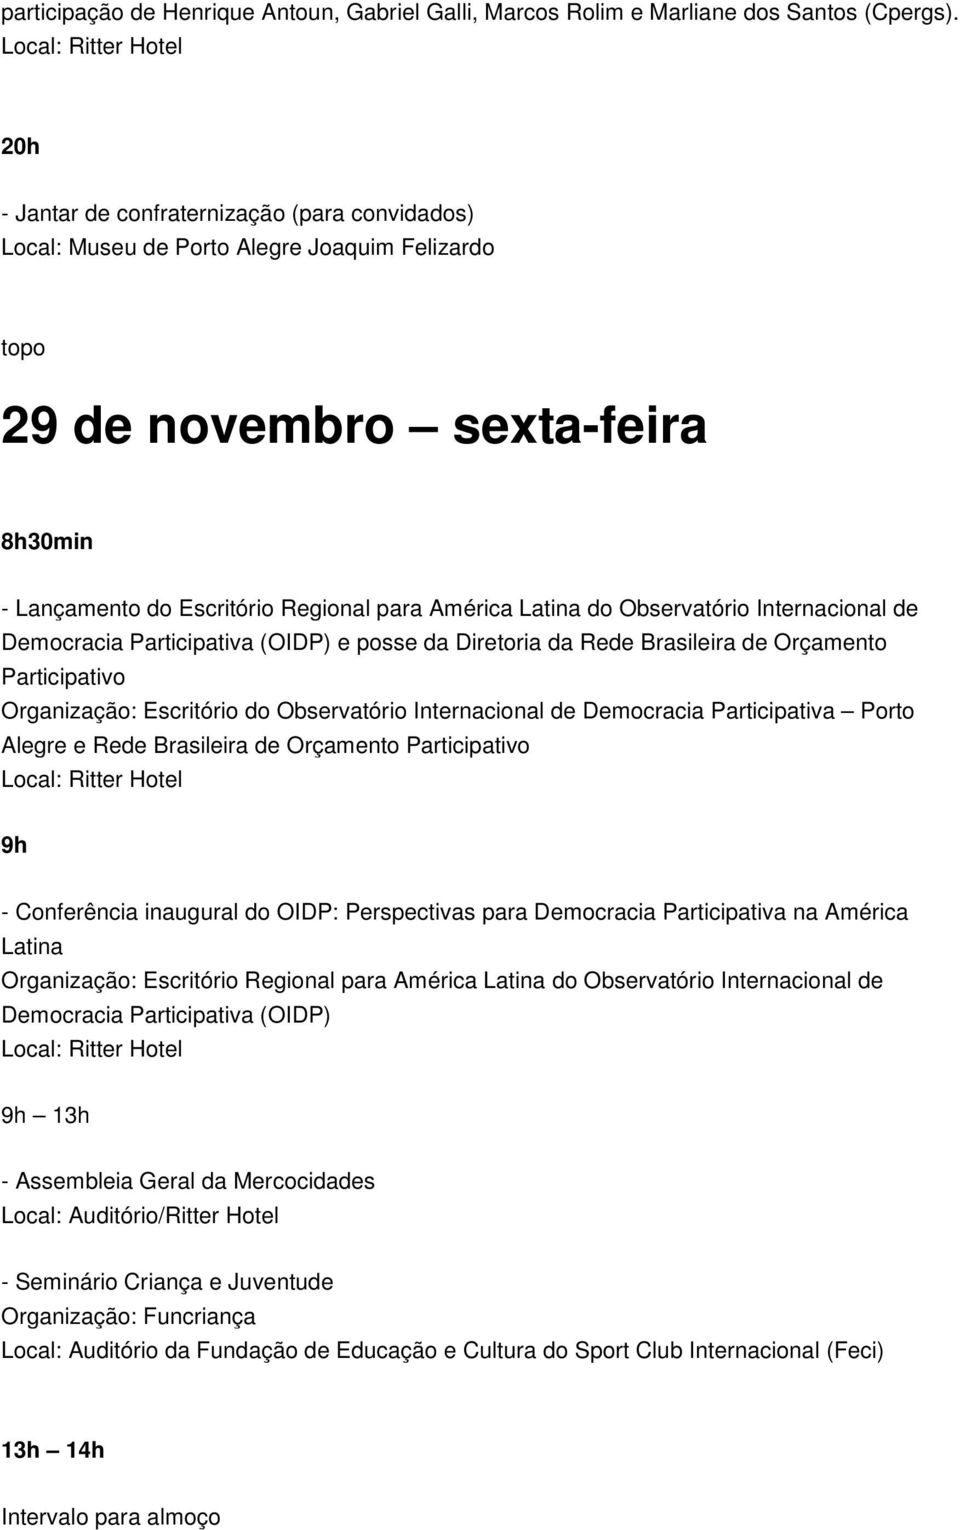 Observatório Internacional de Democracia Participativa (OIDP) e posse da Diretoria da Rede Brasileira de Orçamento Participativo Organização: Escritório do Observatório Internacional de Democracia